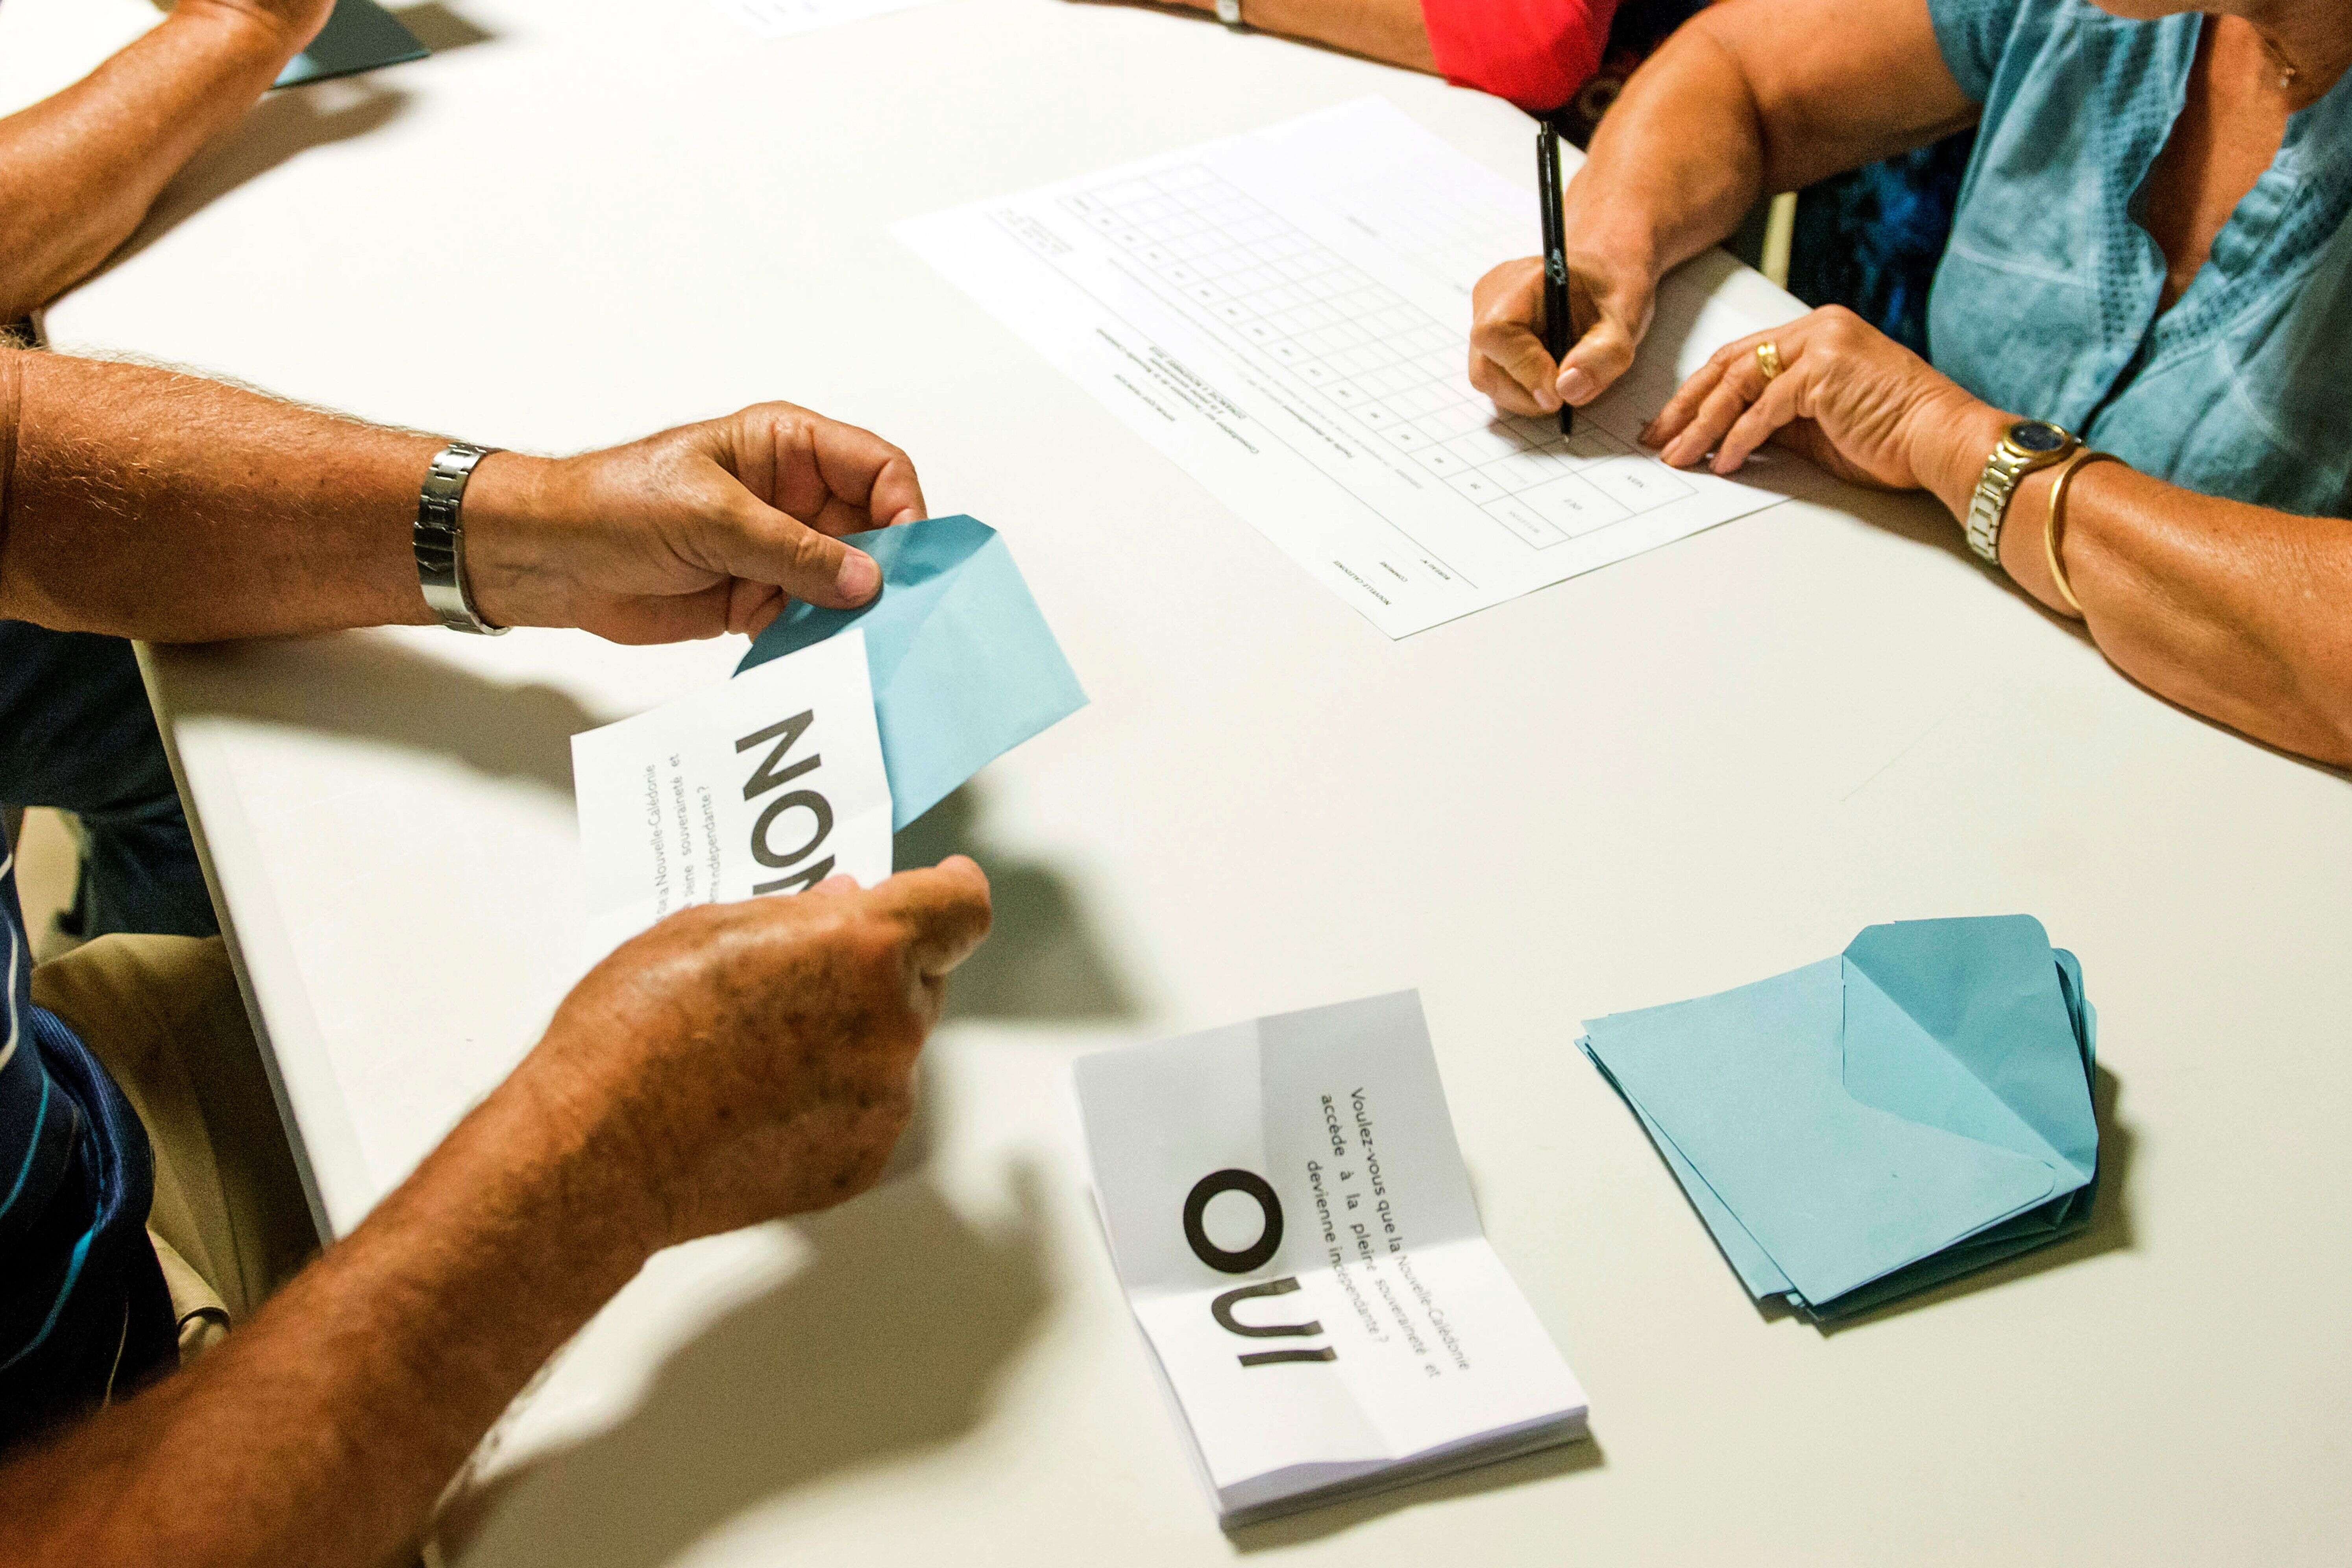 En novembre 2018, la Nouvelle-Calédonie avait déjà voté sur son indépendance, dans un premier référendum où le 